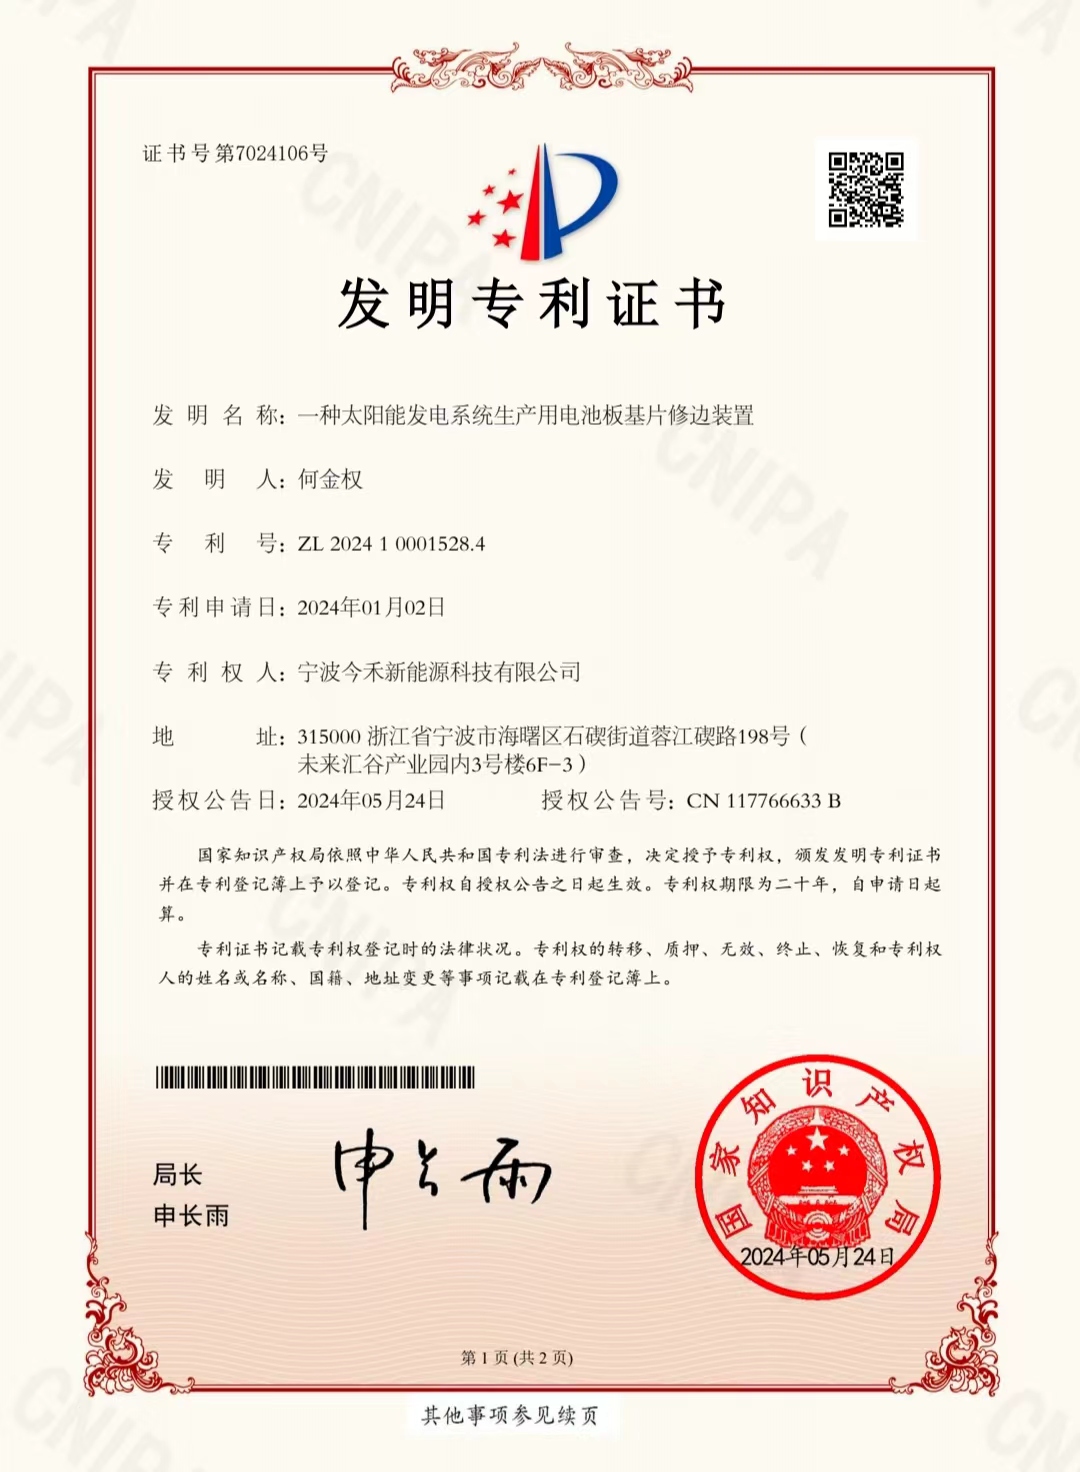 宁波今禾新能源科技有限公司，发明专利获得国家知识产权局审核通过，并颁发专利证书。